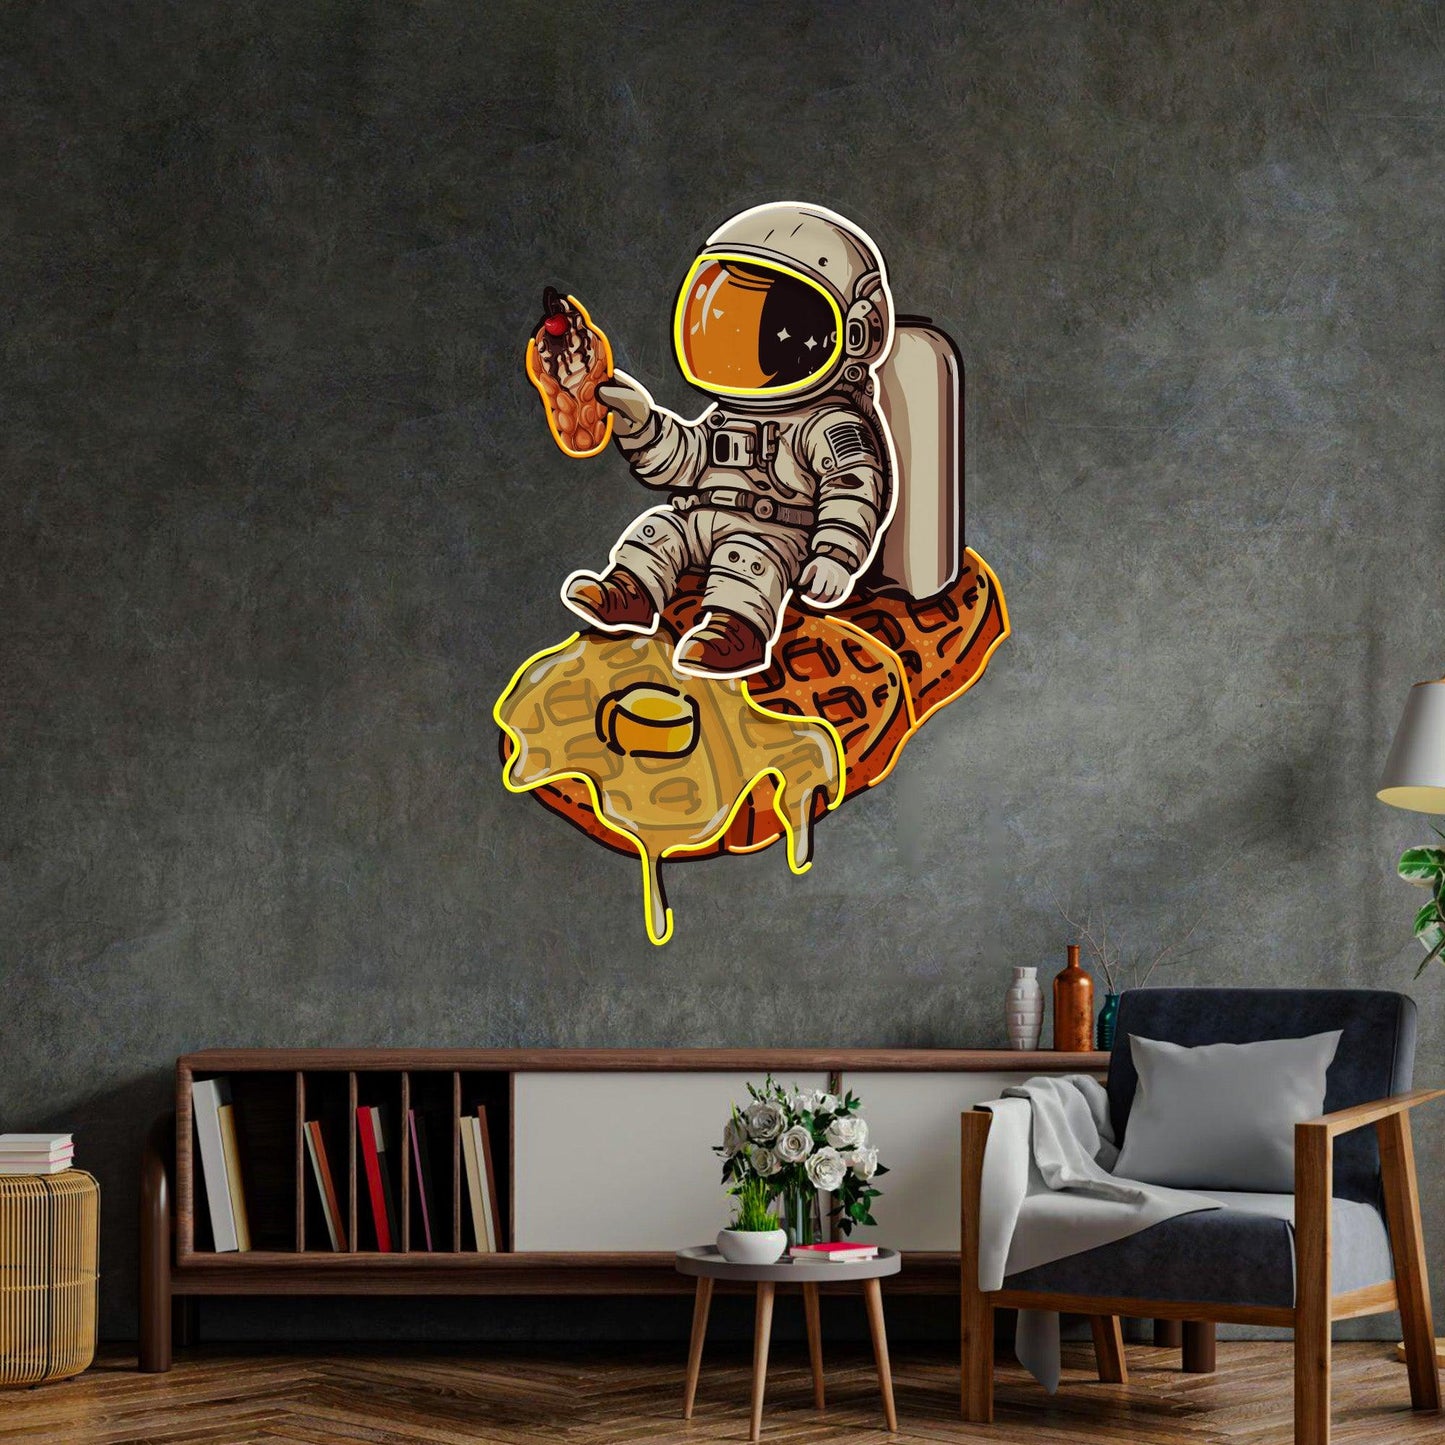 Astronaut on Waffle Led Neon Acrylic Artwork - Neonzastudio